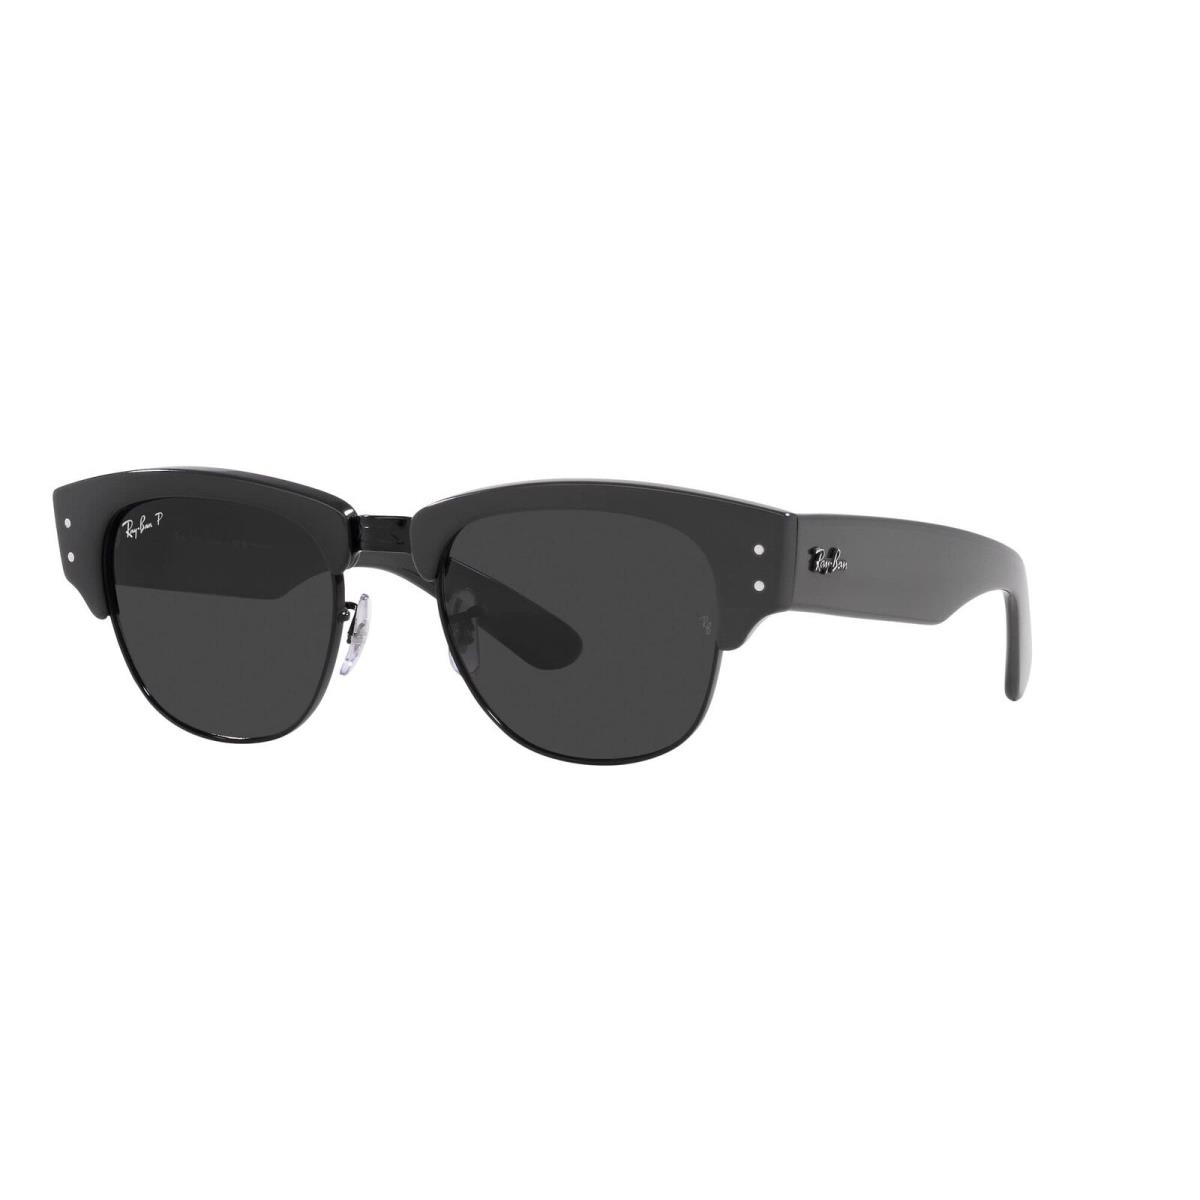 Ray-ban Unisex Sunglasses Grey On Black Frame Black Lenses 50MM